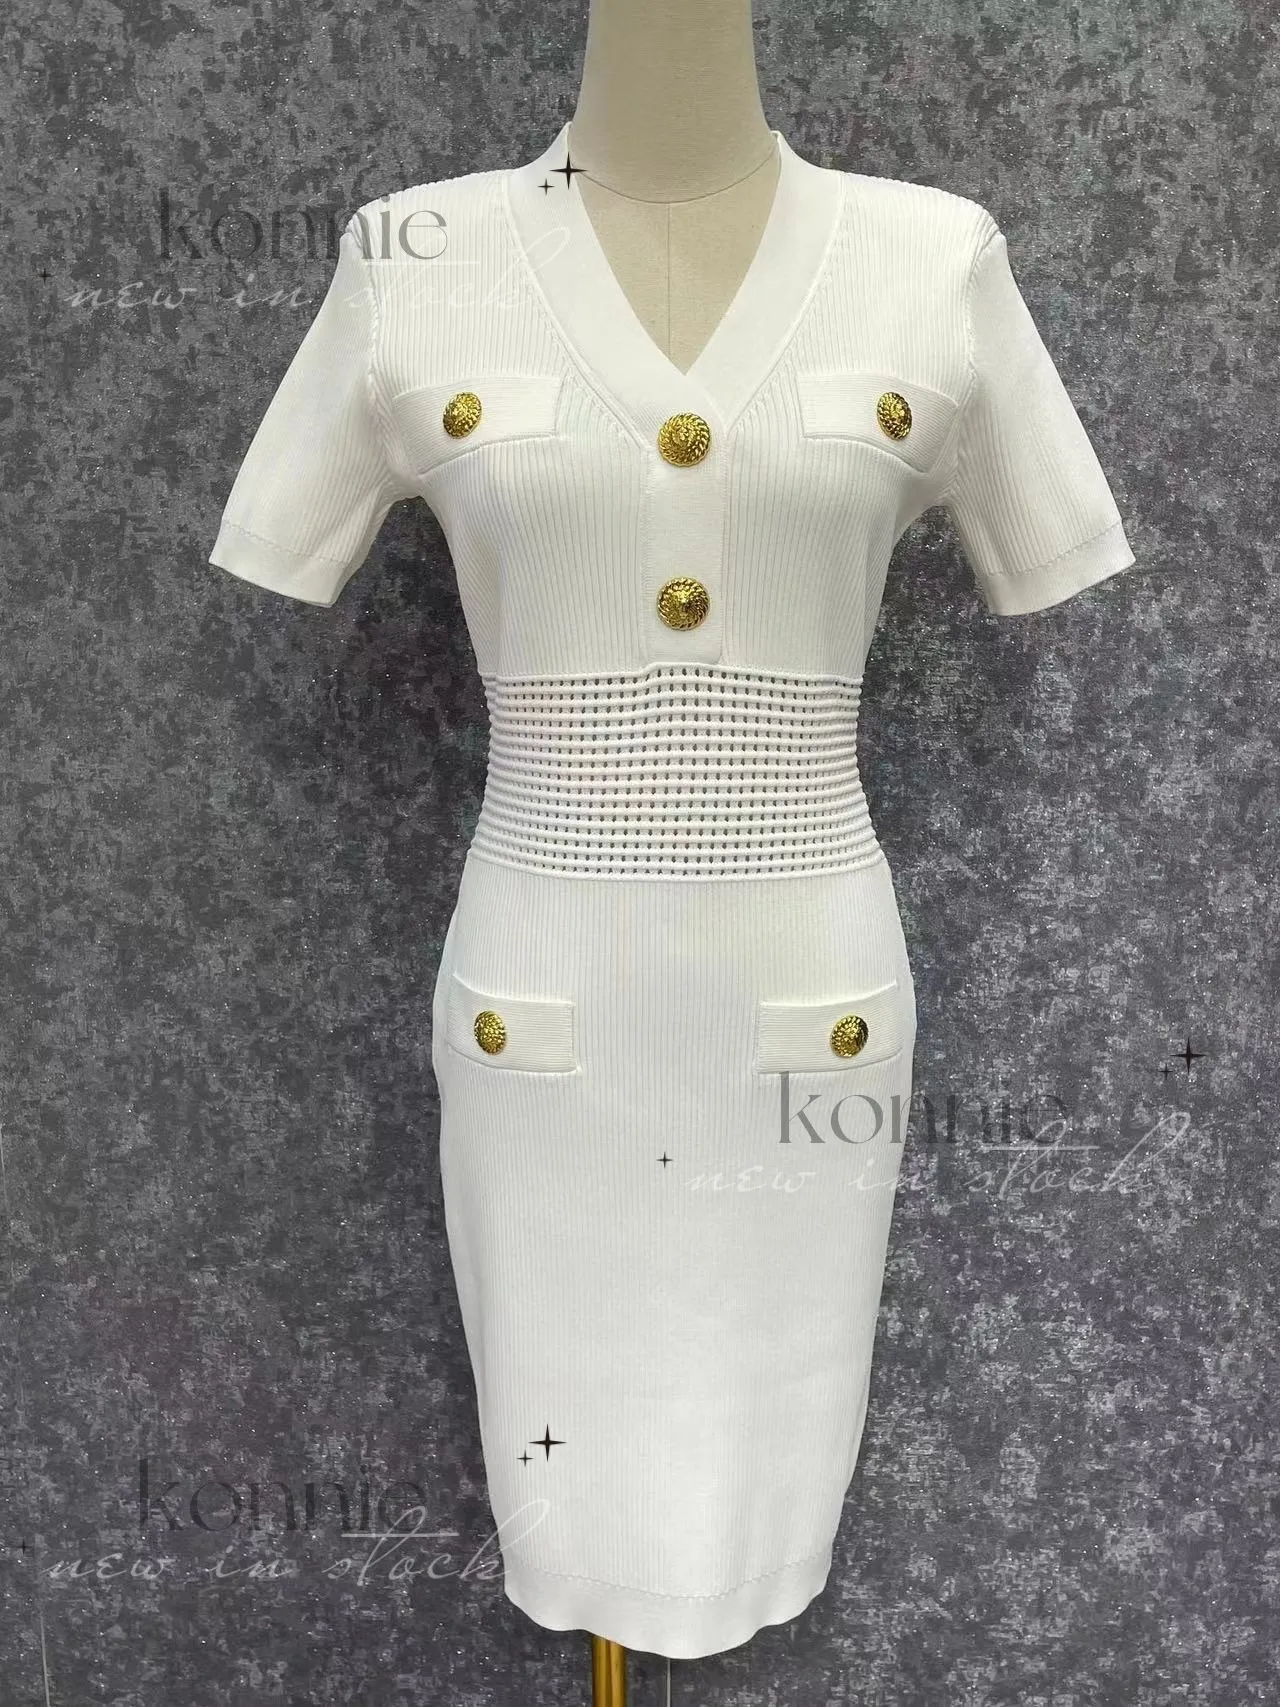 Designerowa spódnica damska sukienka Knitra Klasyczna spódnica 24ss z metalowymi guzikami krótkie rękawowe spódnica wysokiej jakości designerska luksusowa spódnica w talii